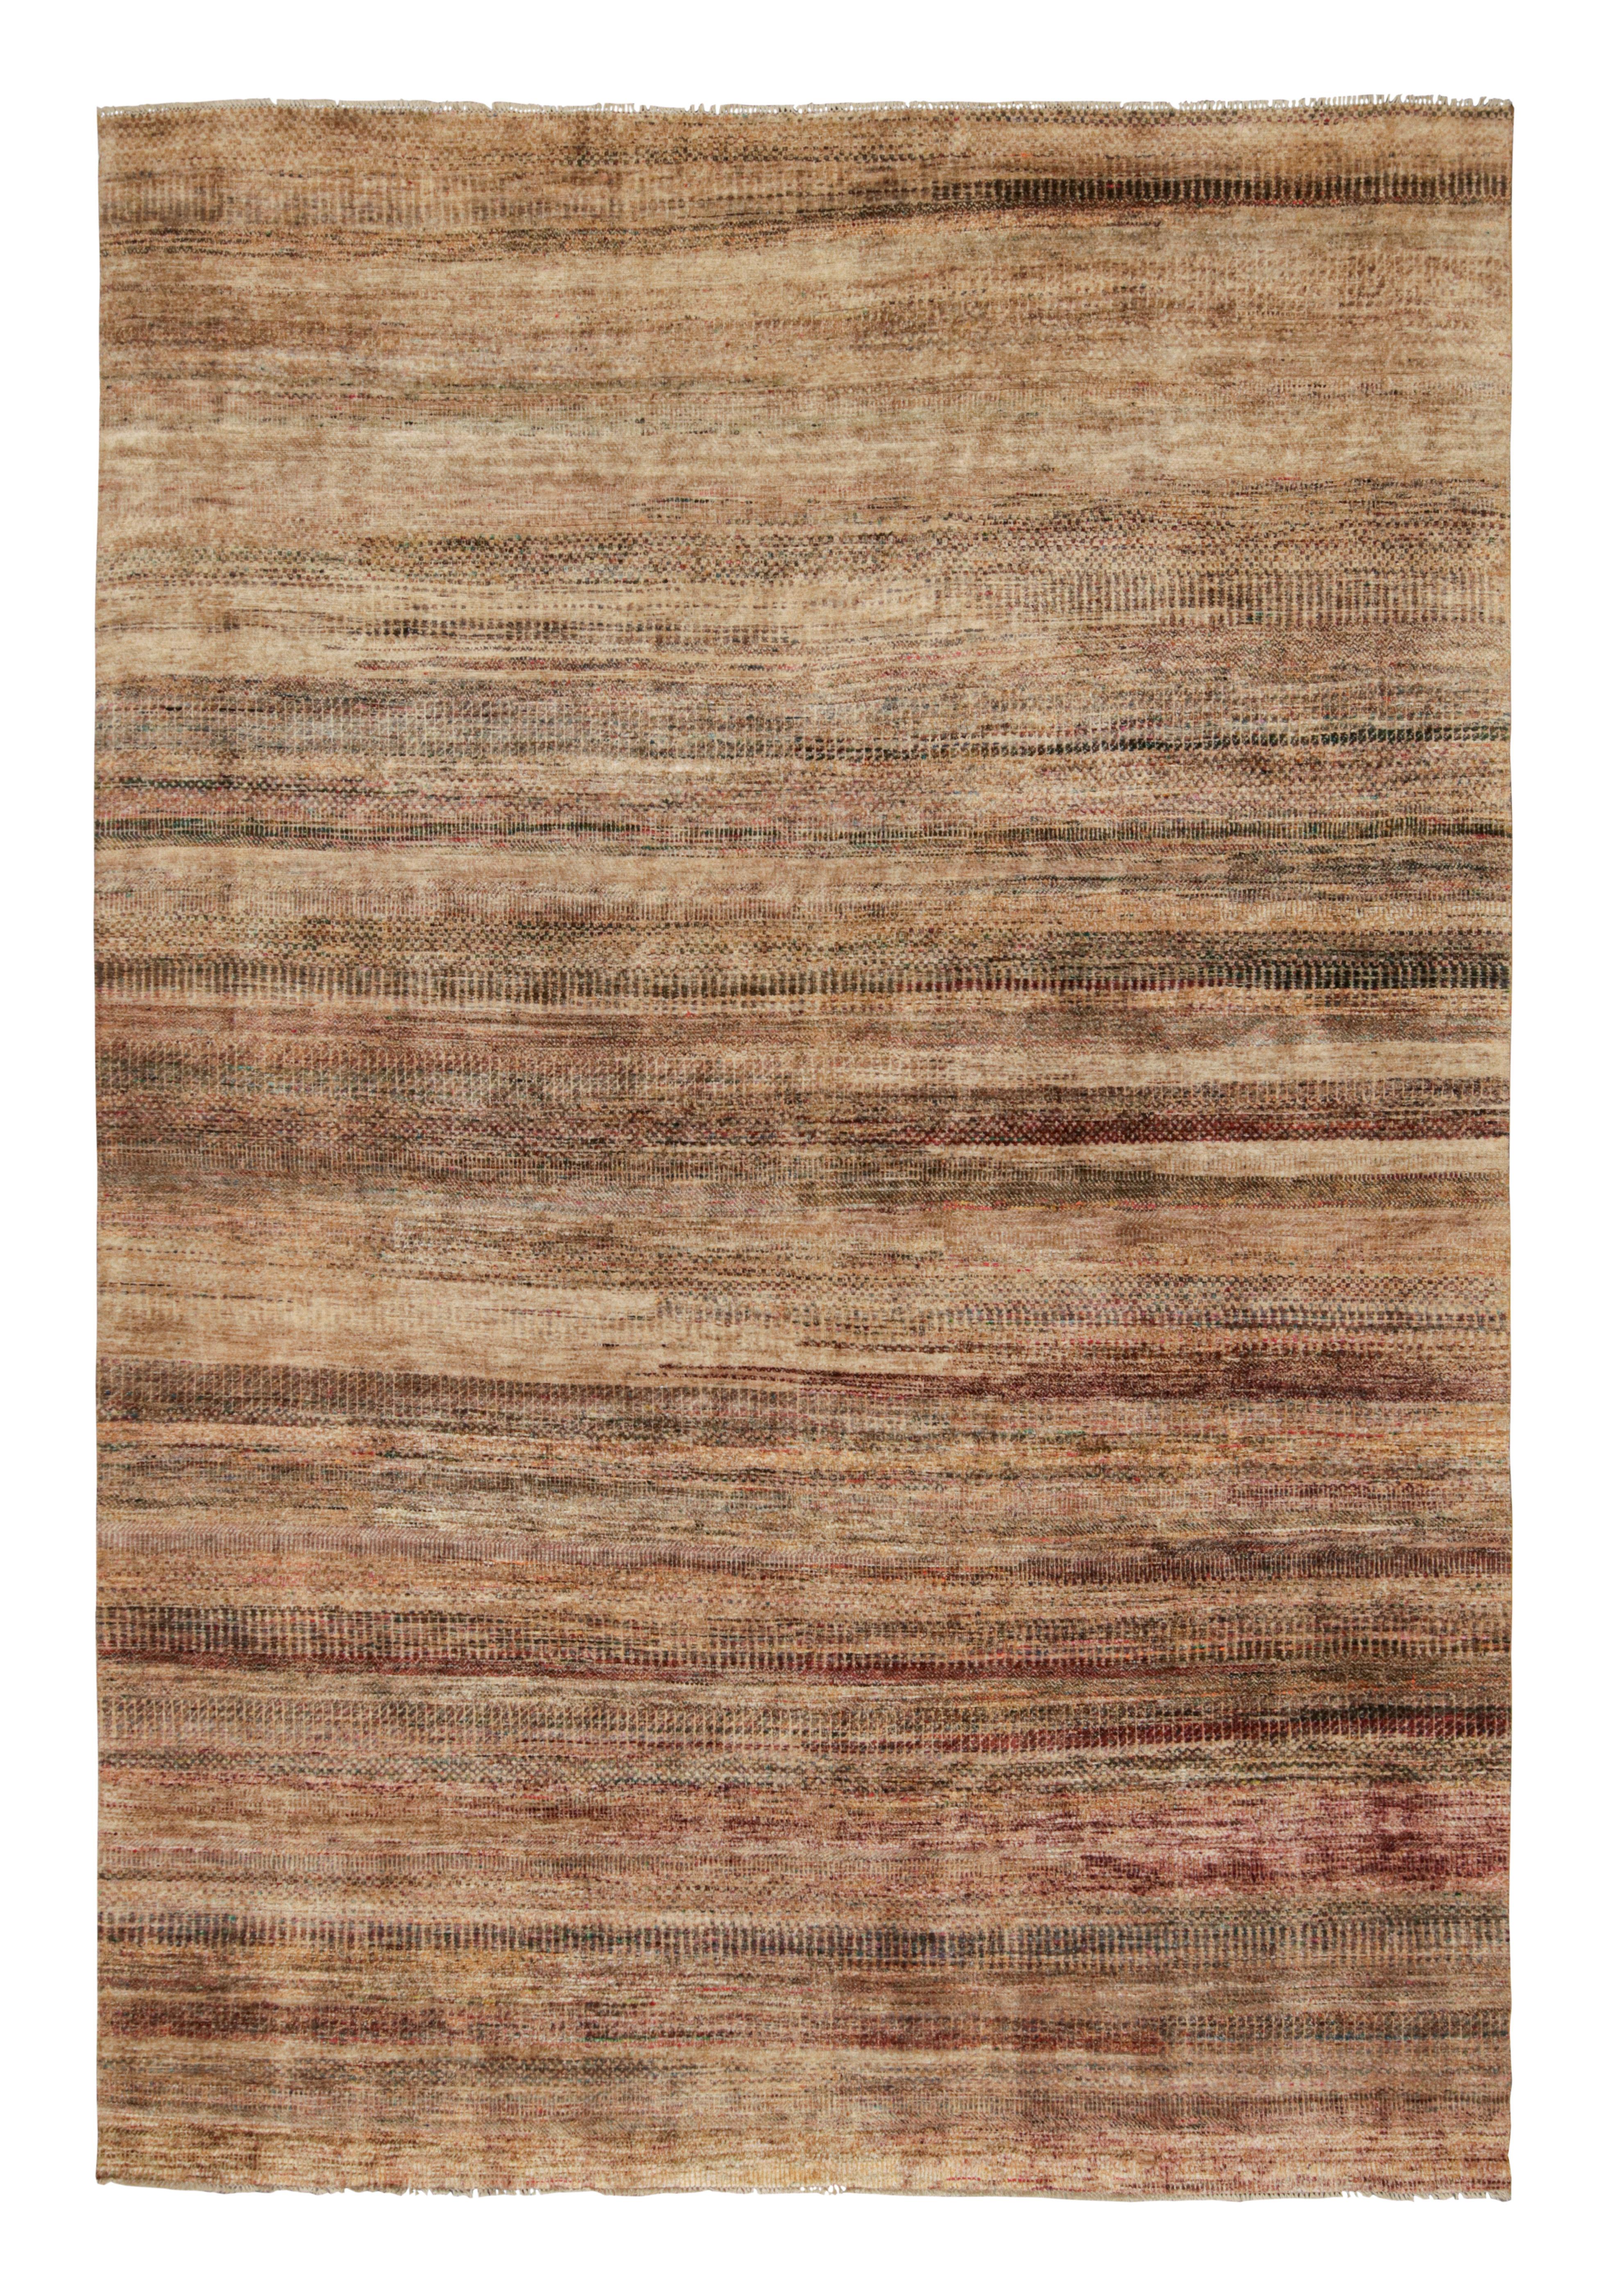 Dieser 10x14 große Teppich ist eine aufregende neue Ergänzung der Texture of Color Collection'S von Rug & Kilim.

Über das Design:

Dieser Teppich aus handgeknüpfter Seide spiegelt eine neue Sichtweise auf das Thema dieser Collection'S wider -